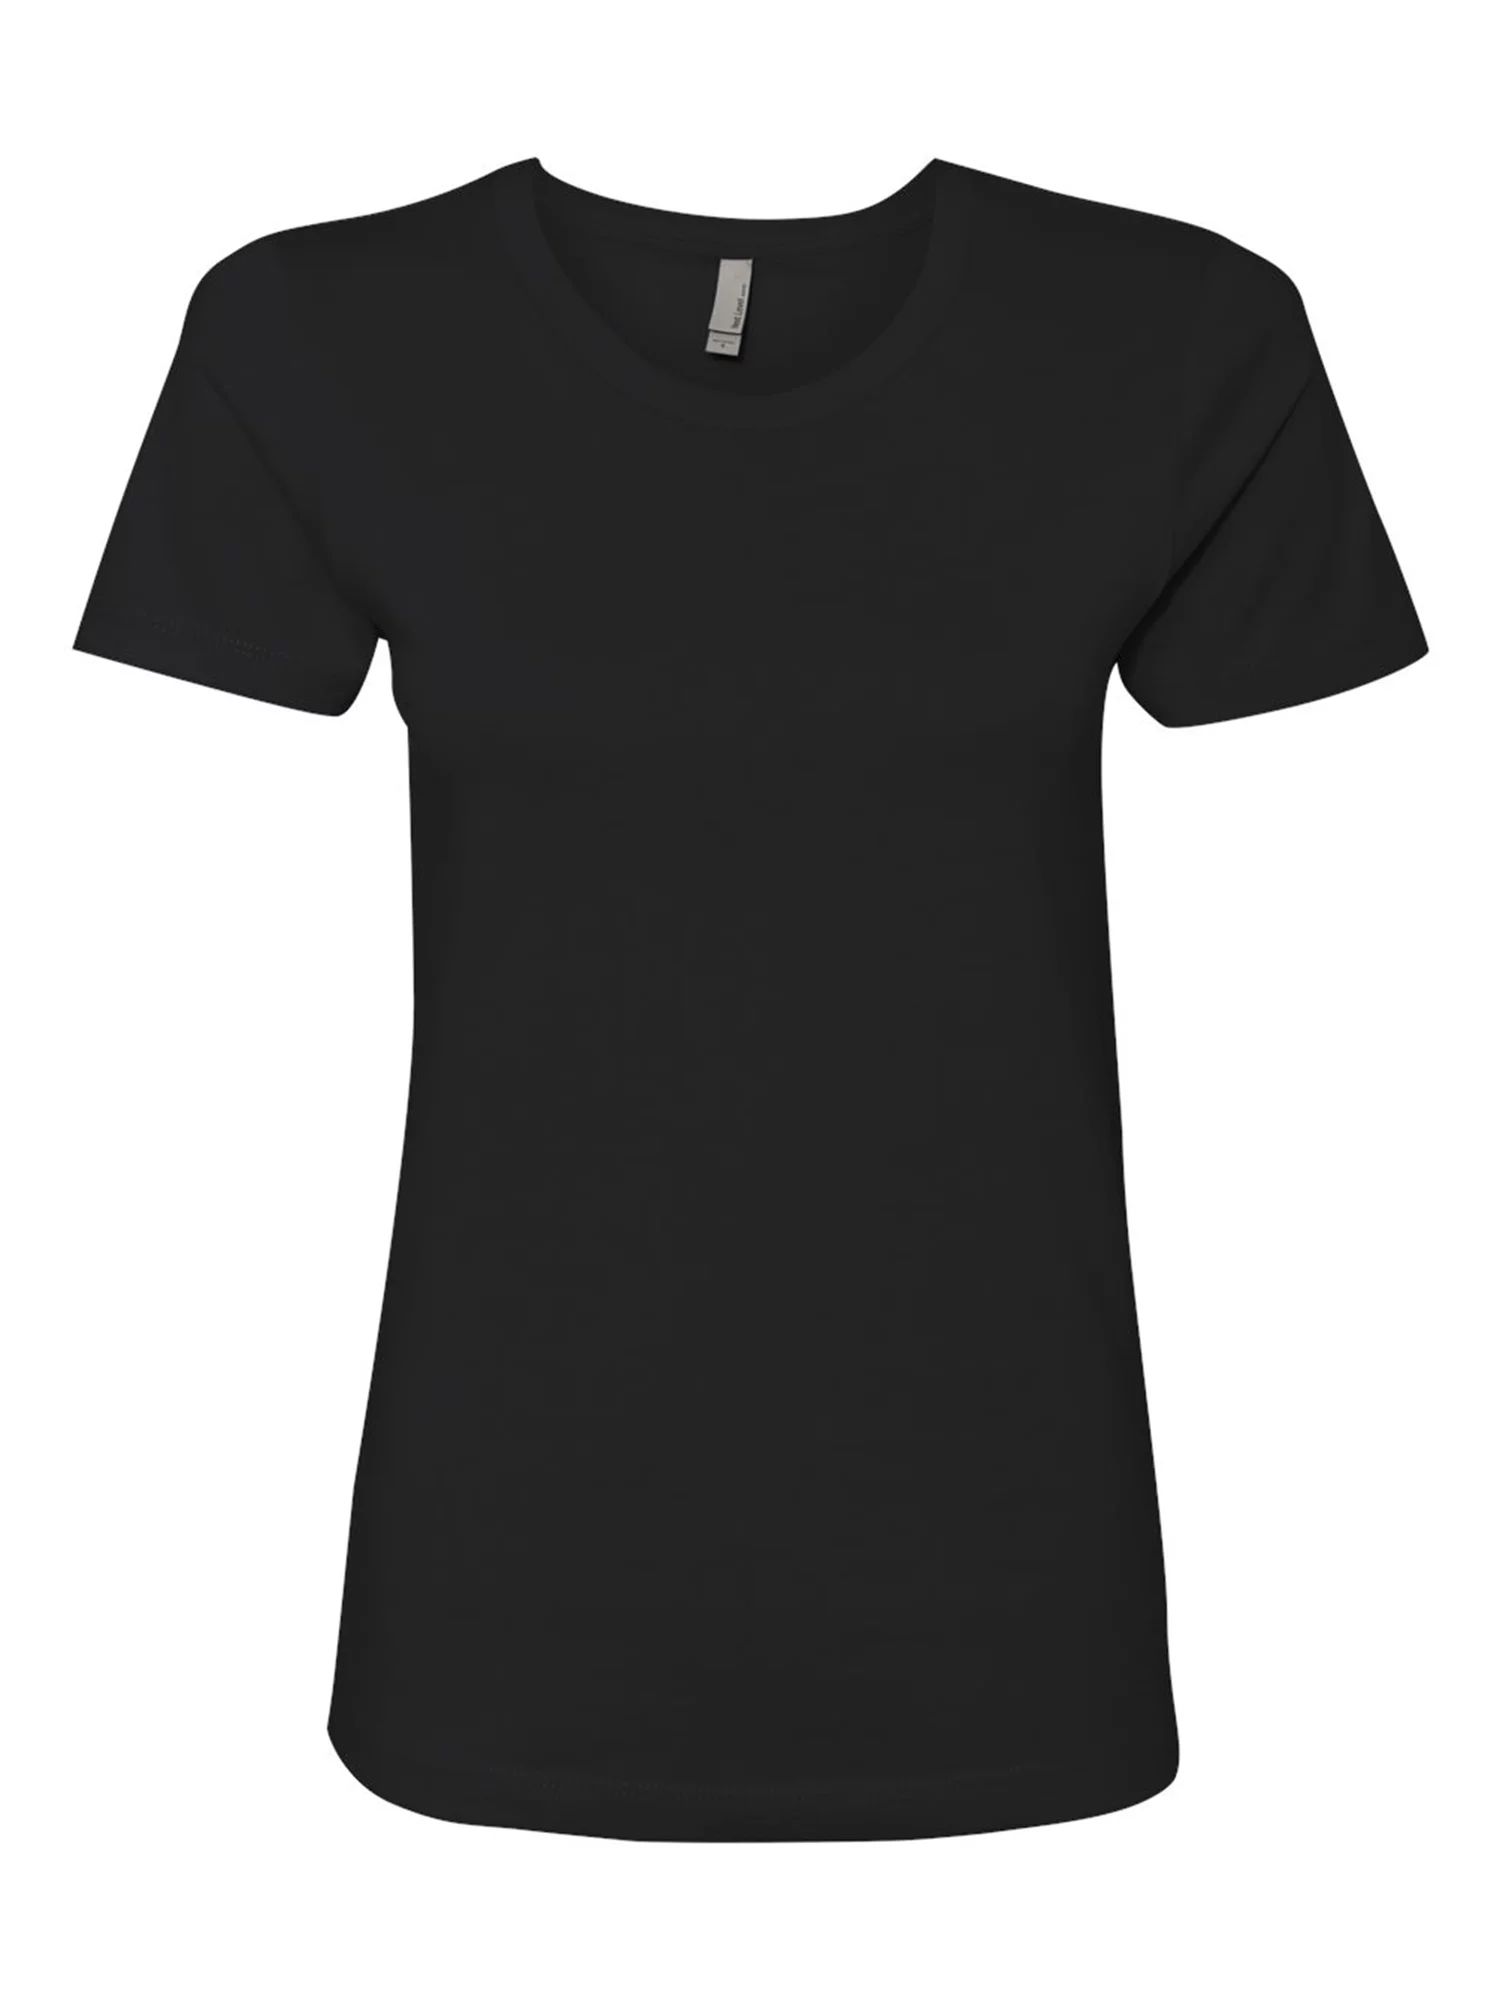 Next Level - Plain T Shirt for Women - Short Sleeve Women Shirts - Womens Black Shirt - Value Bas... | Walmart (US)